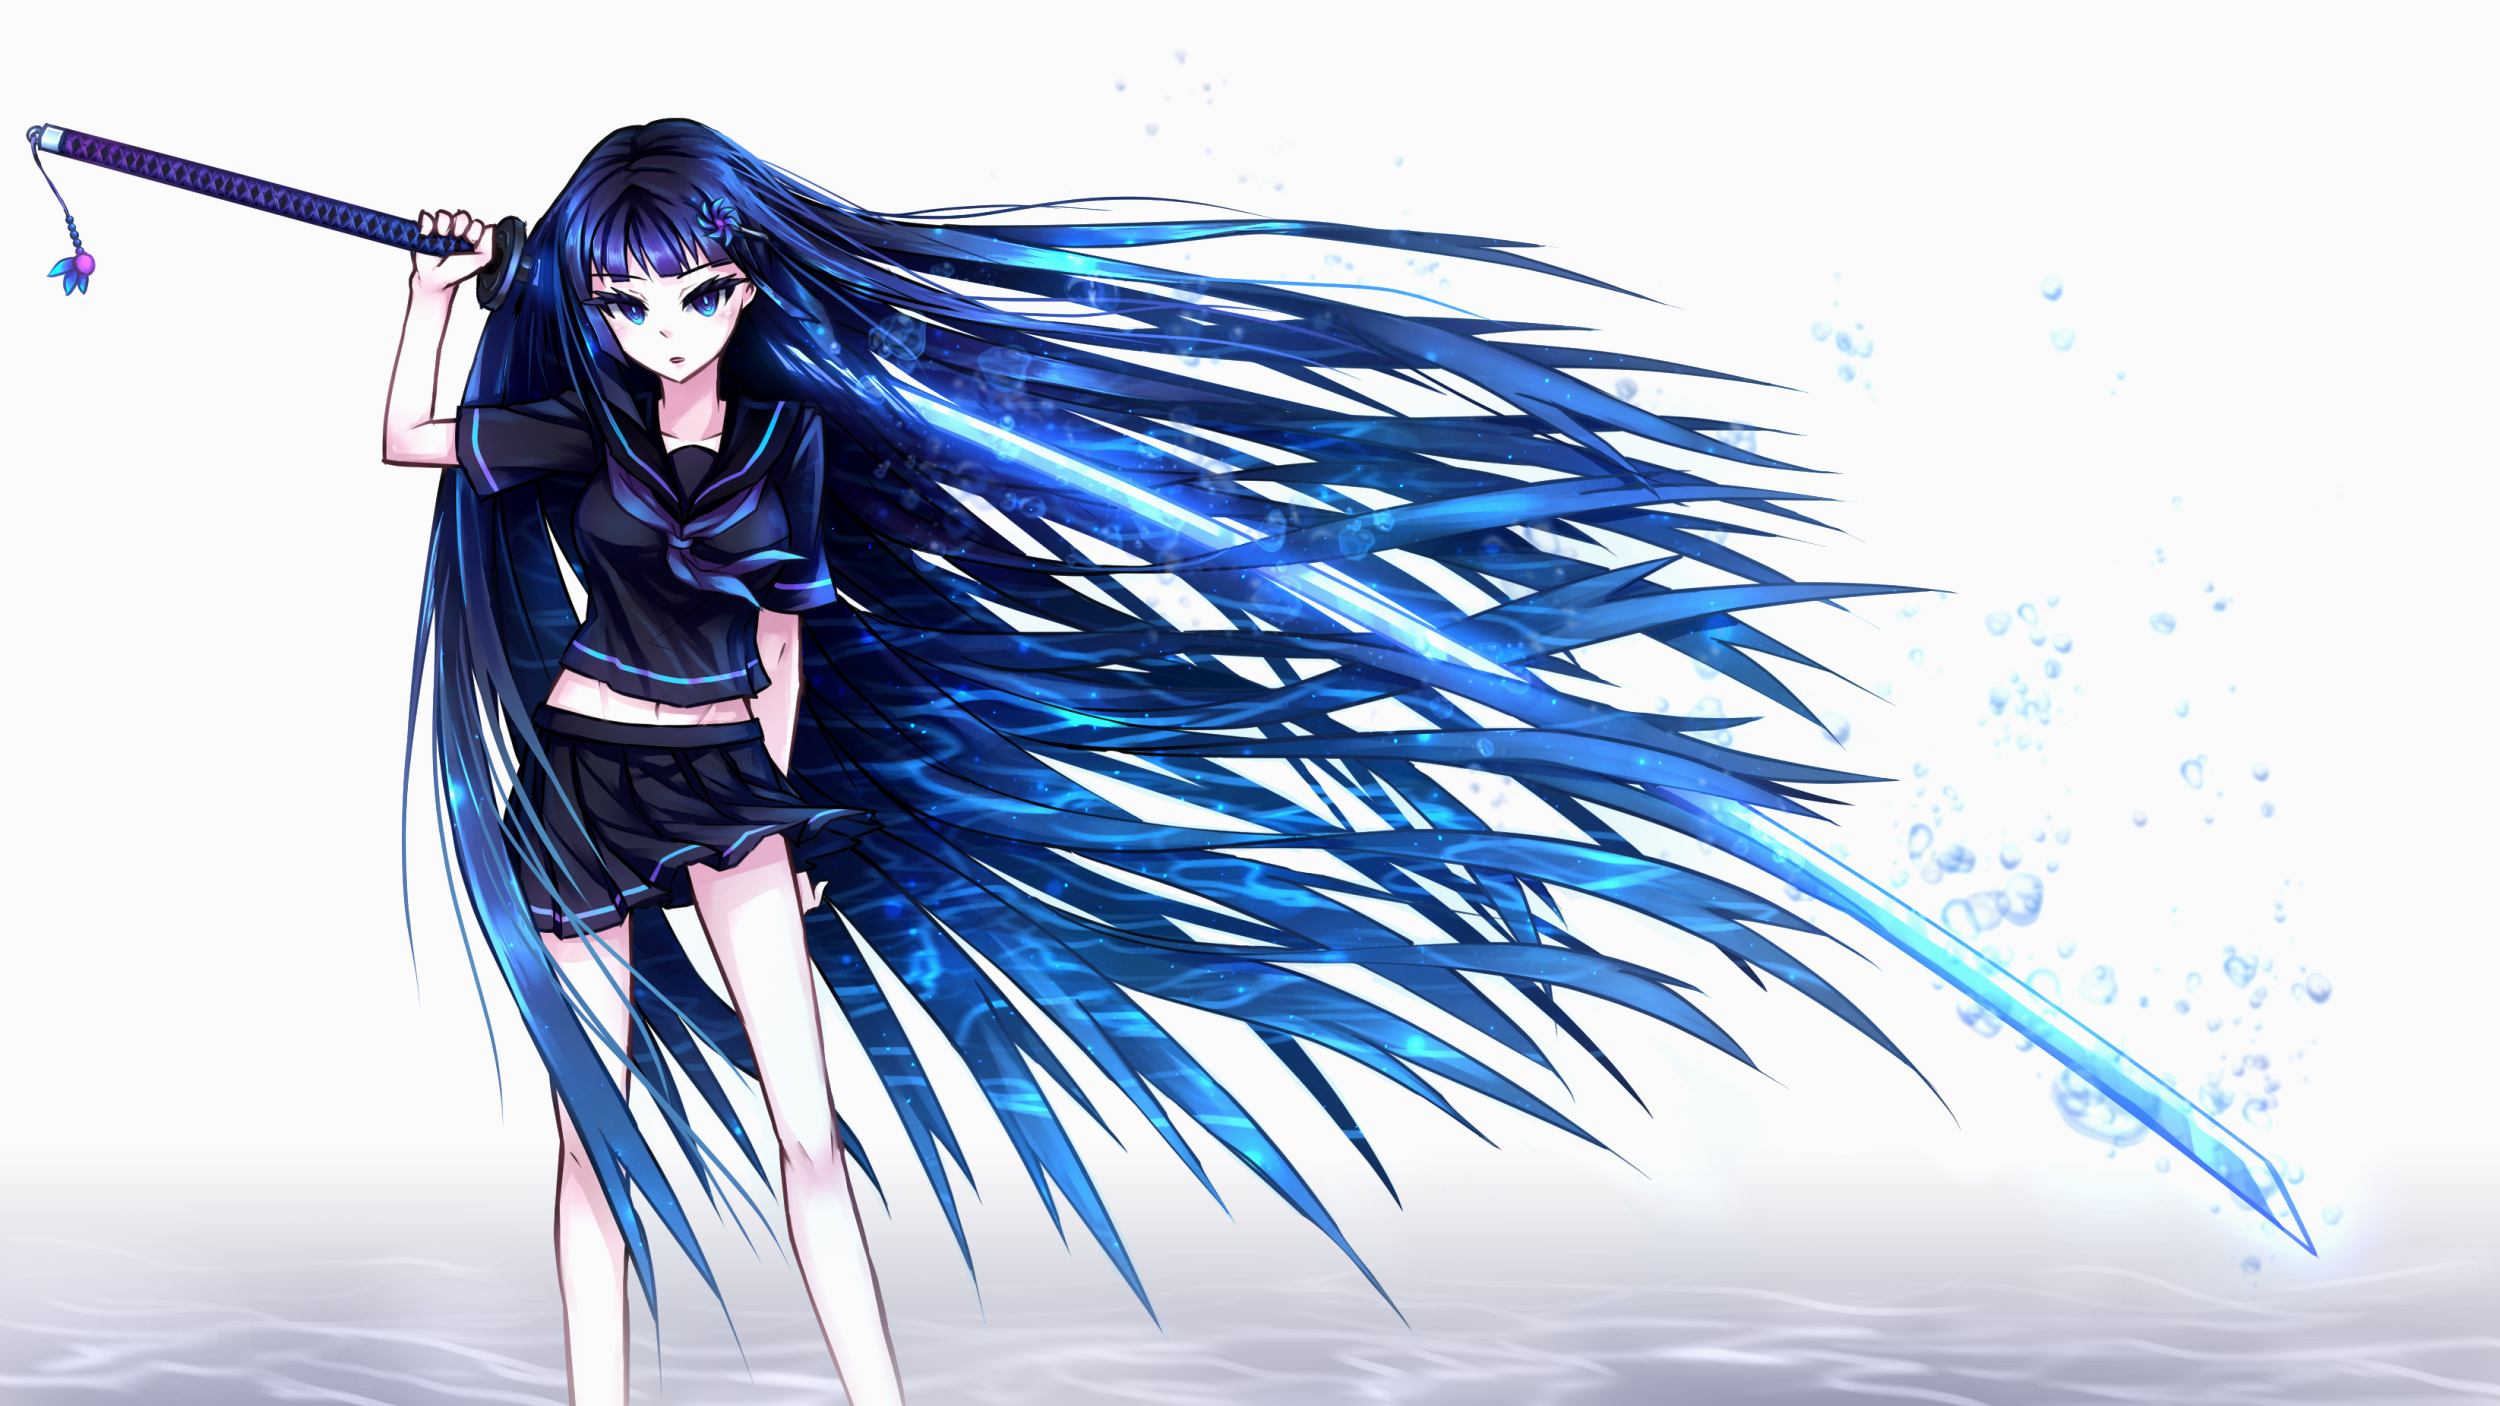 Anime 2500x1406 anime anime girls women with swords sword blue eyes miniskirt long hair blue hair weapon katana